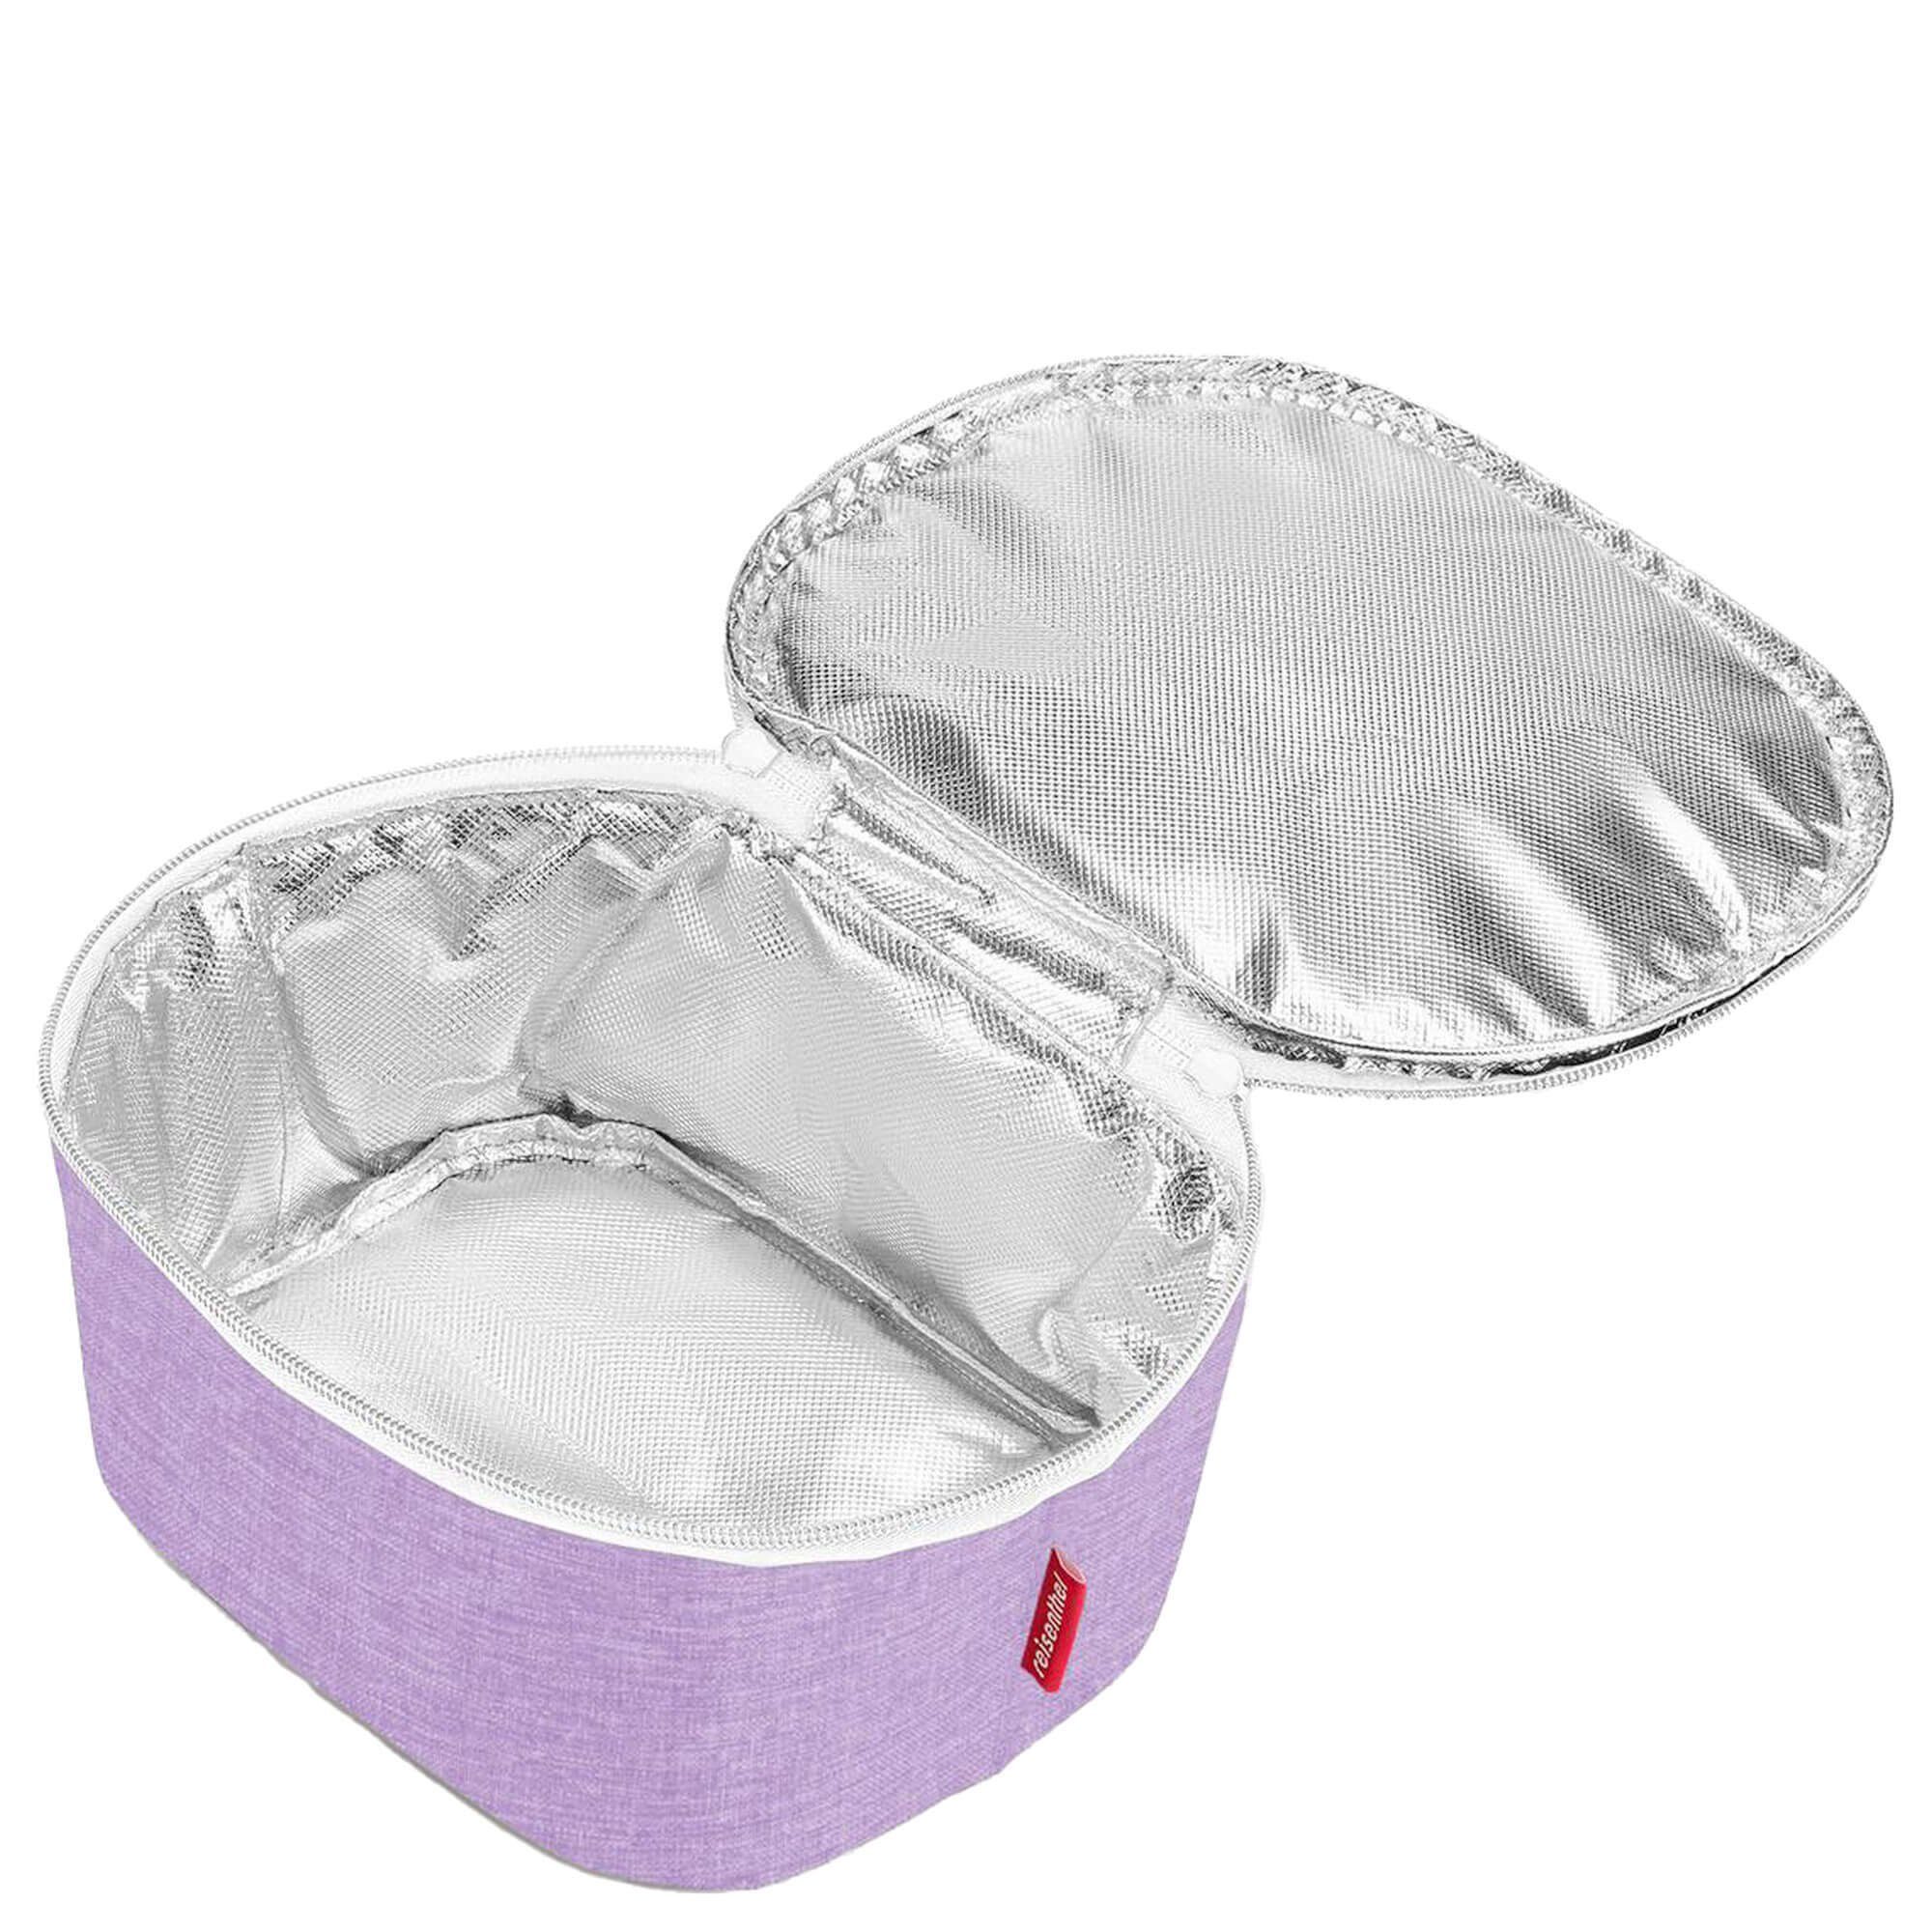 twist Brotzeitbox thermo cm, S - coolerbag REISENTHEL® 2.5 Einkaufsbeutel violet 22.5 l